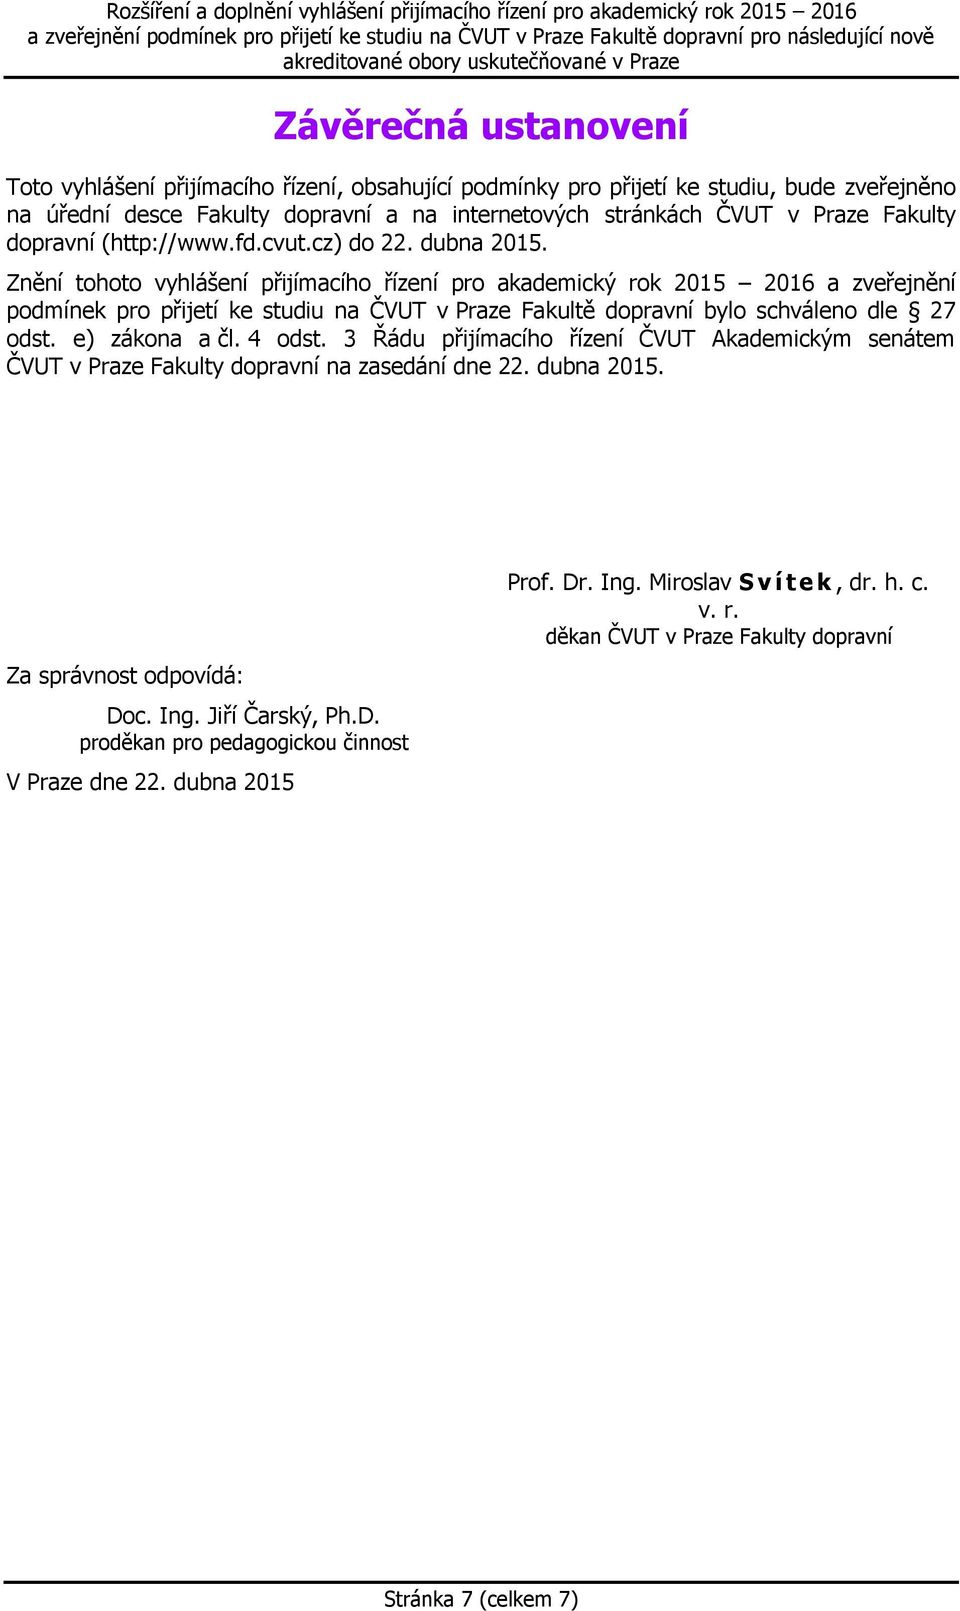 Znění tohoto vyhlášení přijímacího řízení pro akademický rok 2015 2016 a zveřejnění podmínek pro přijetí ke studiu na ČVUT v Praze Fakultě dopravní bylo schváleno dle 27 odst. e) zákona a čl.